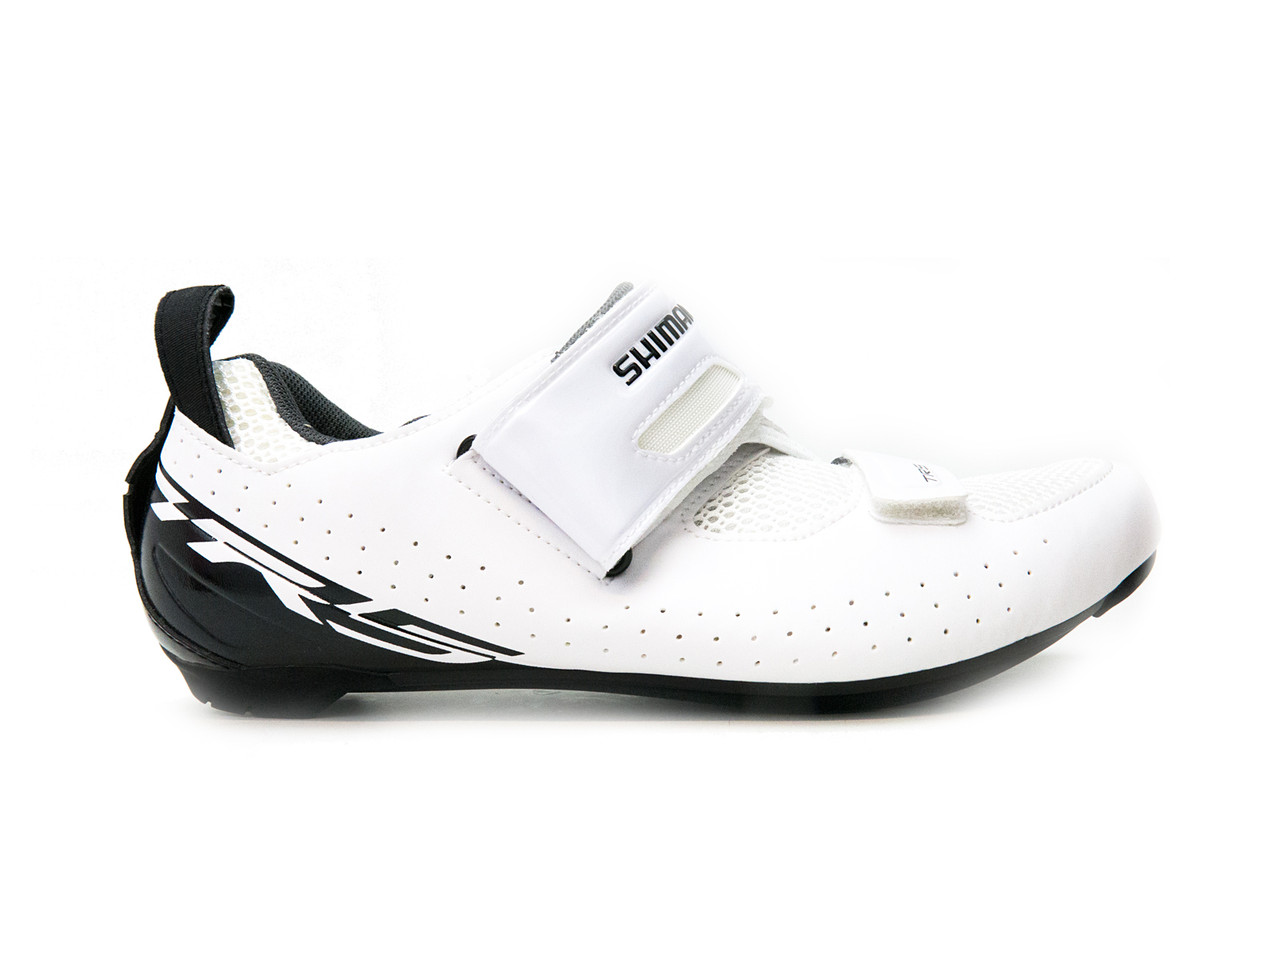 shimano tri cycling shoes